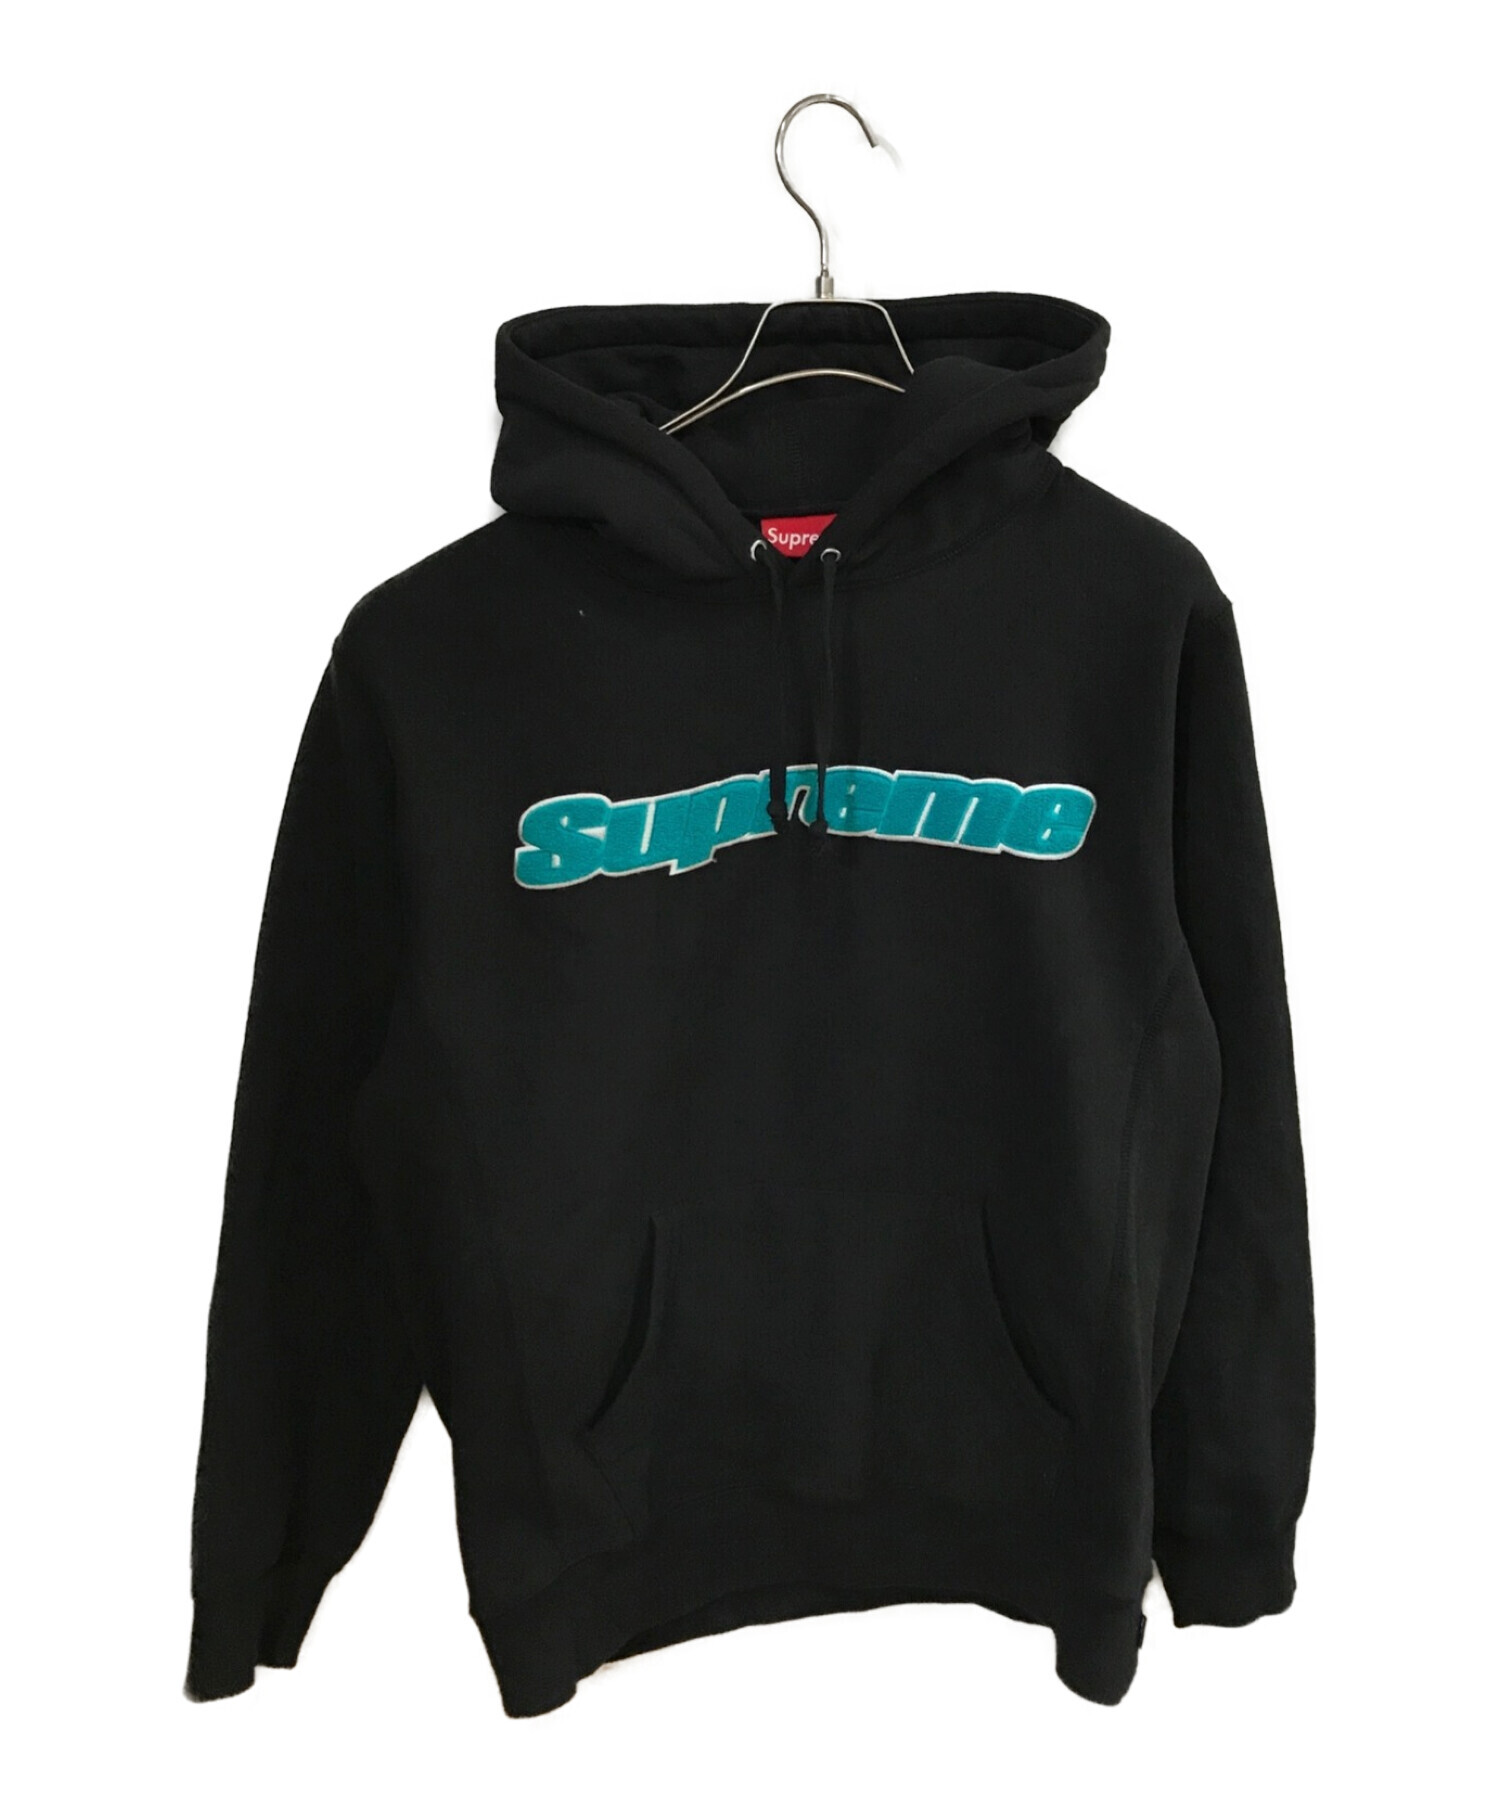 Supreme (シュプリーム) Chenille Hooded Sweatshirt ブラック サイズ:L